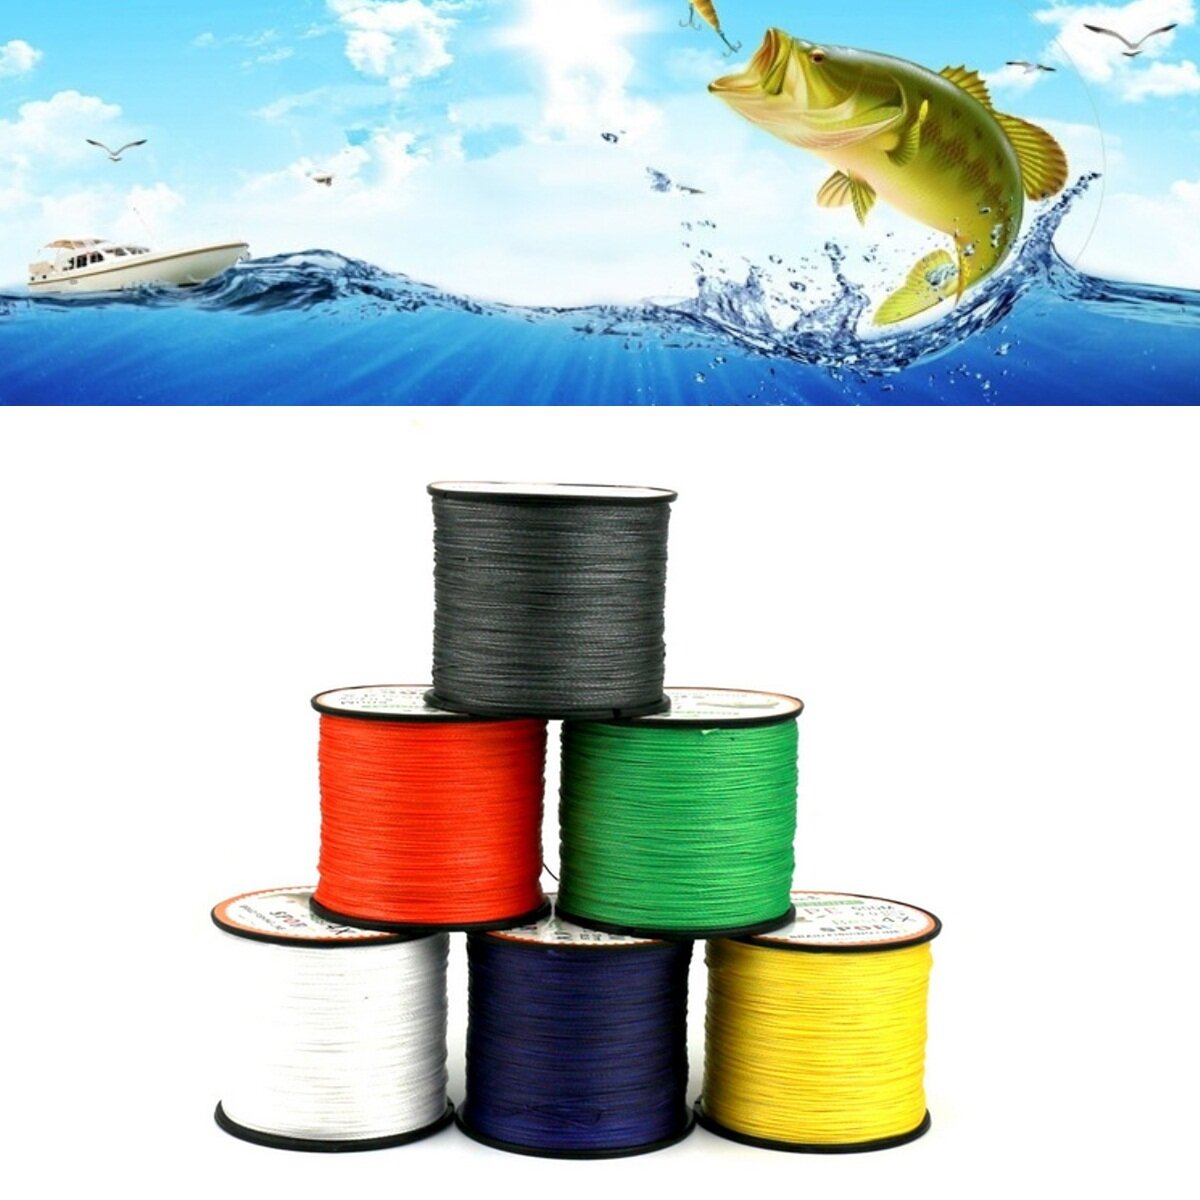 

ZANLURE 500M PE Line Супер прочность на растяжение Устойчивость к истиранию Устойчивость к водопоглощению Море Рыбалка П